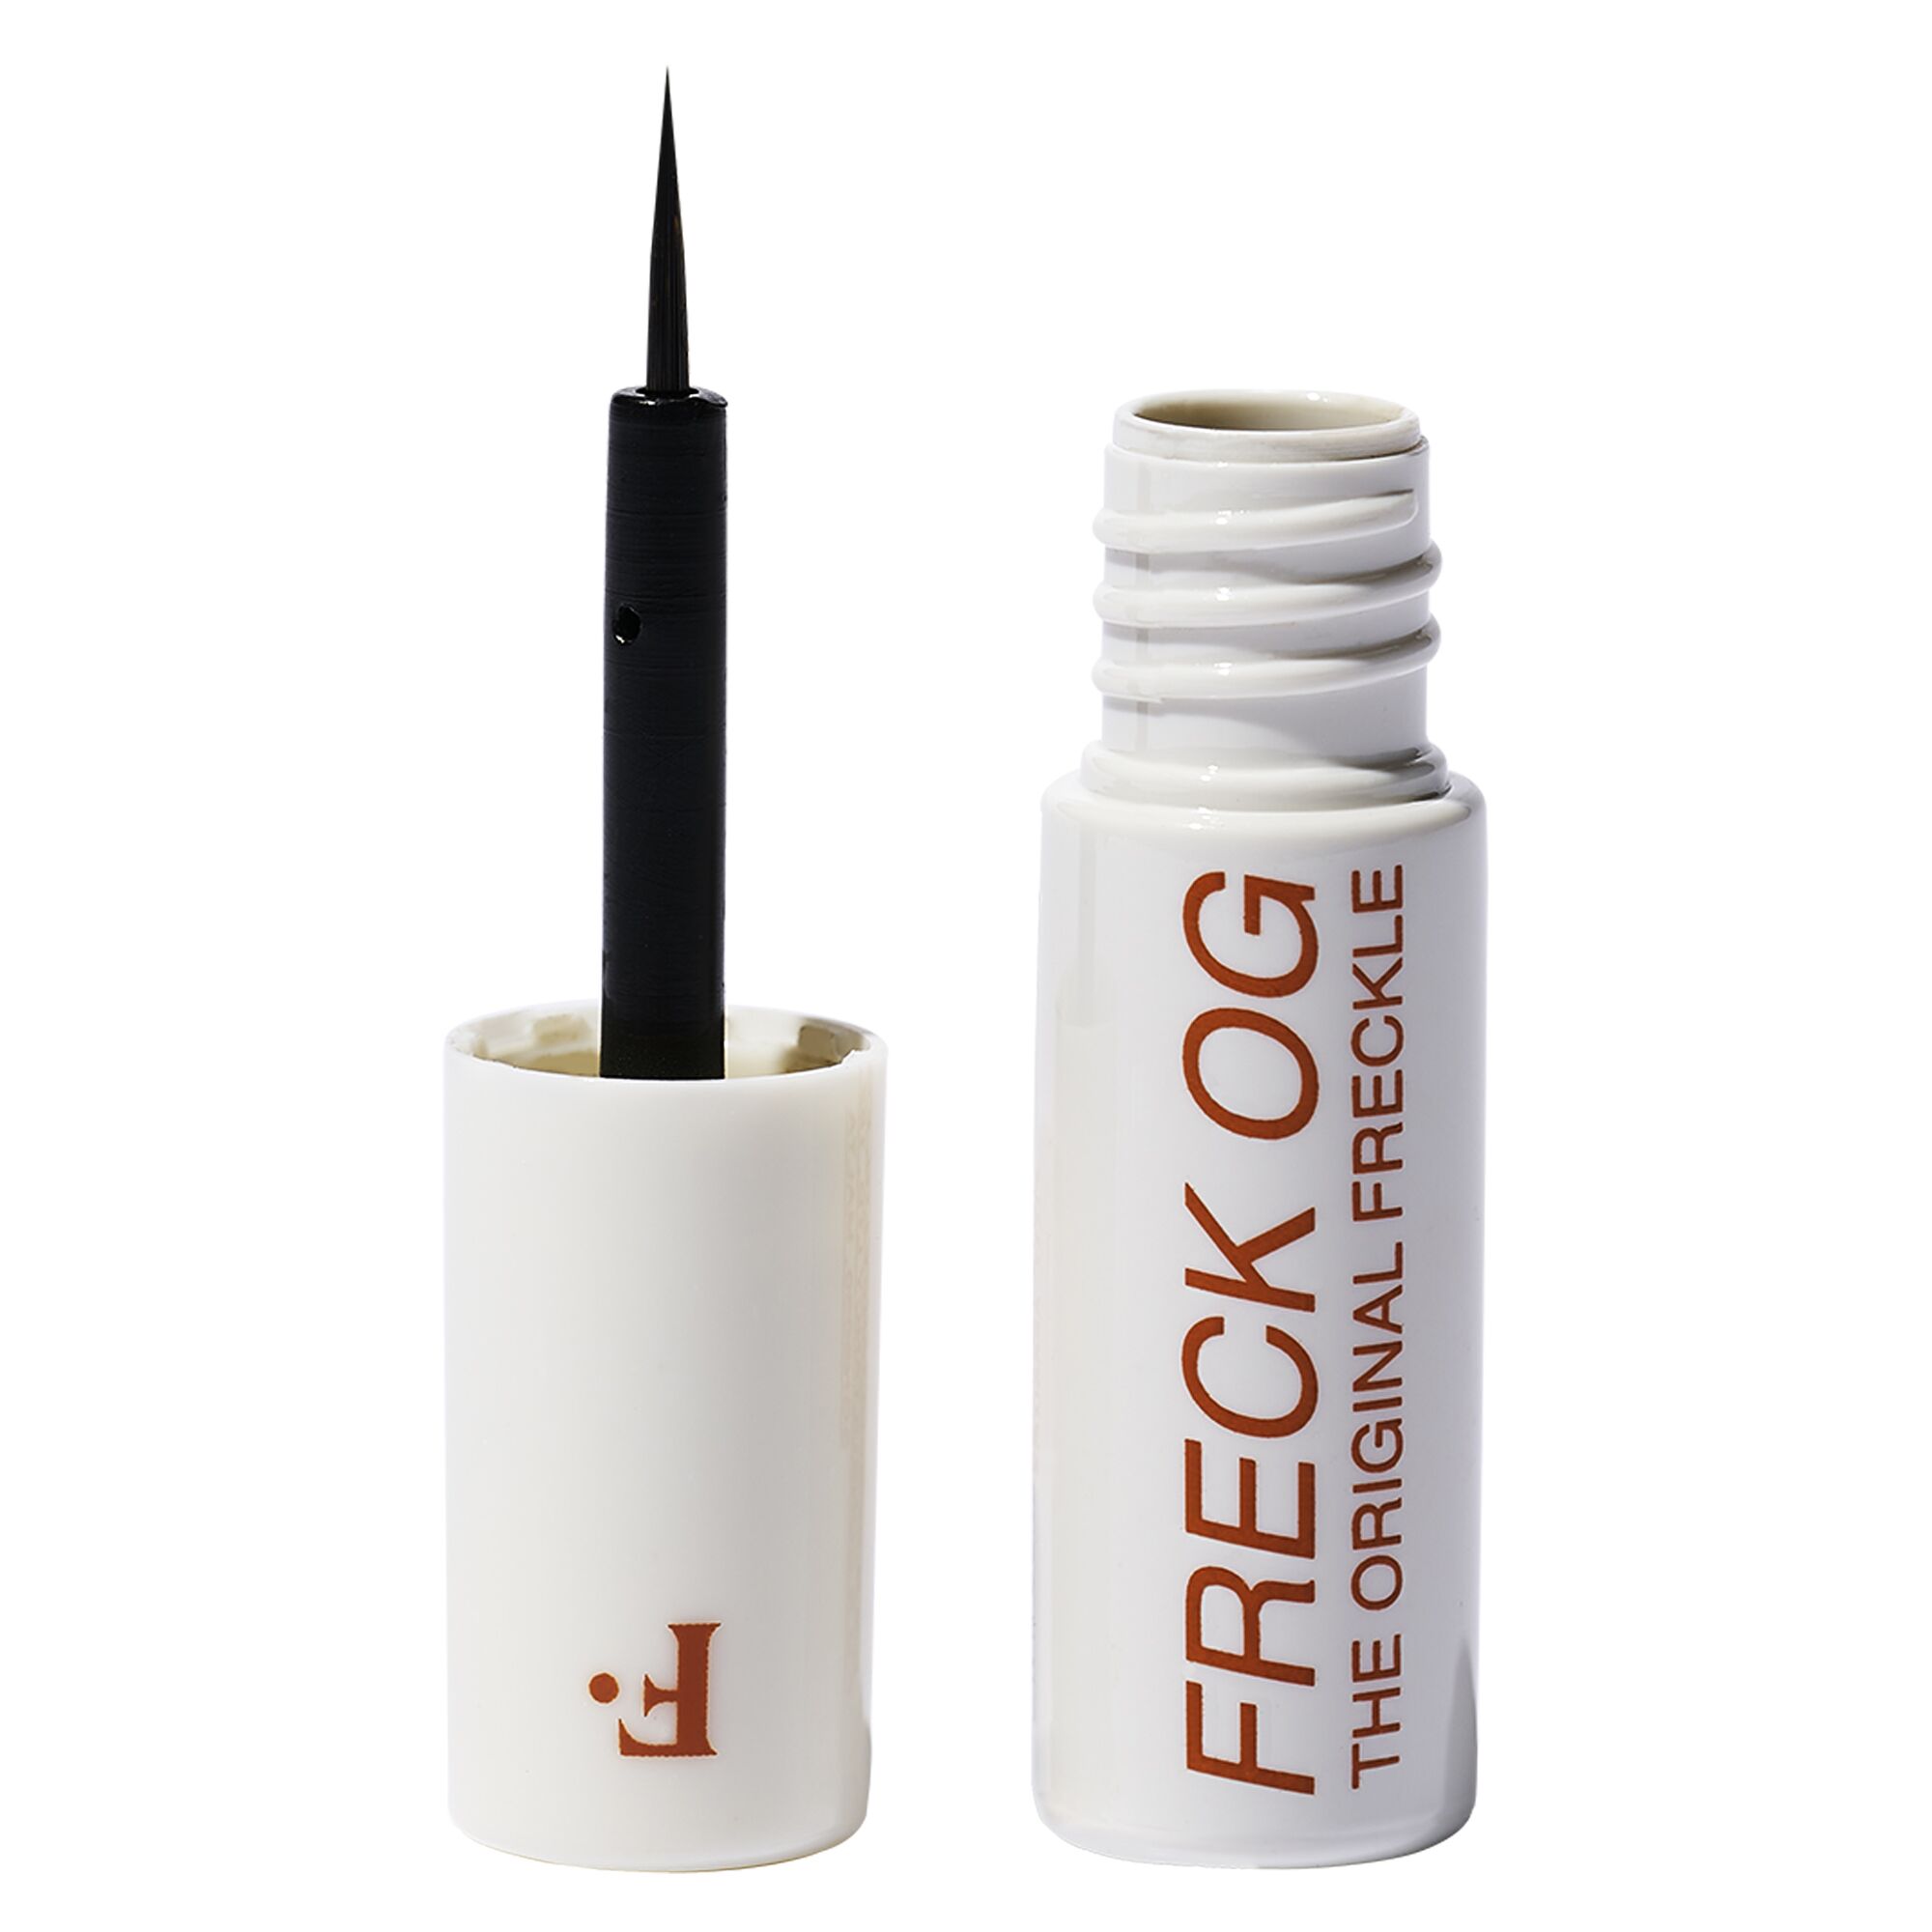 GIFT GUIDE - SKINCARE: Freck Beauty Freck OG